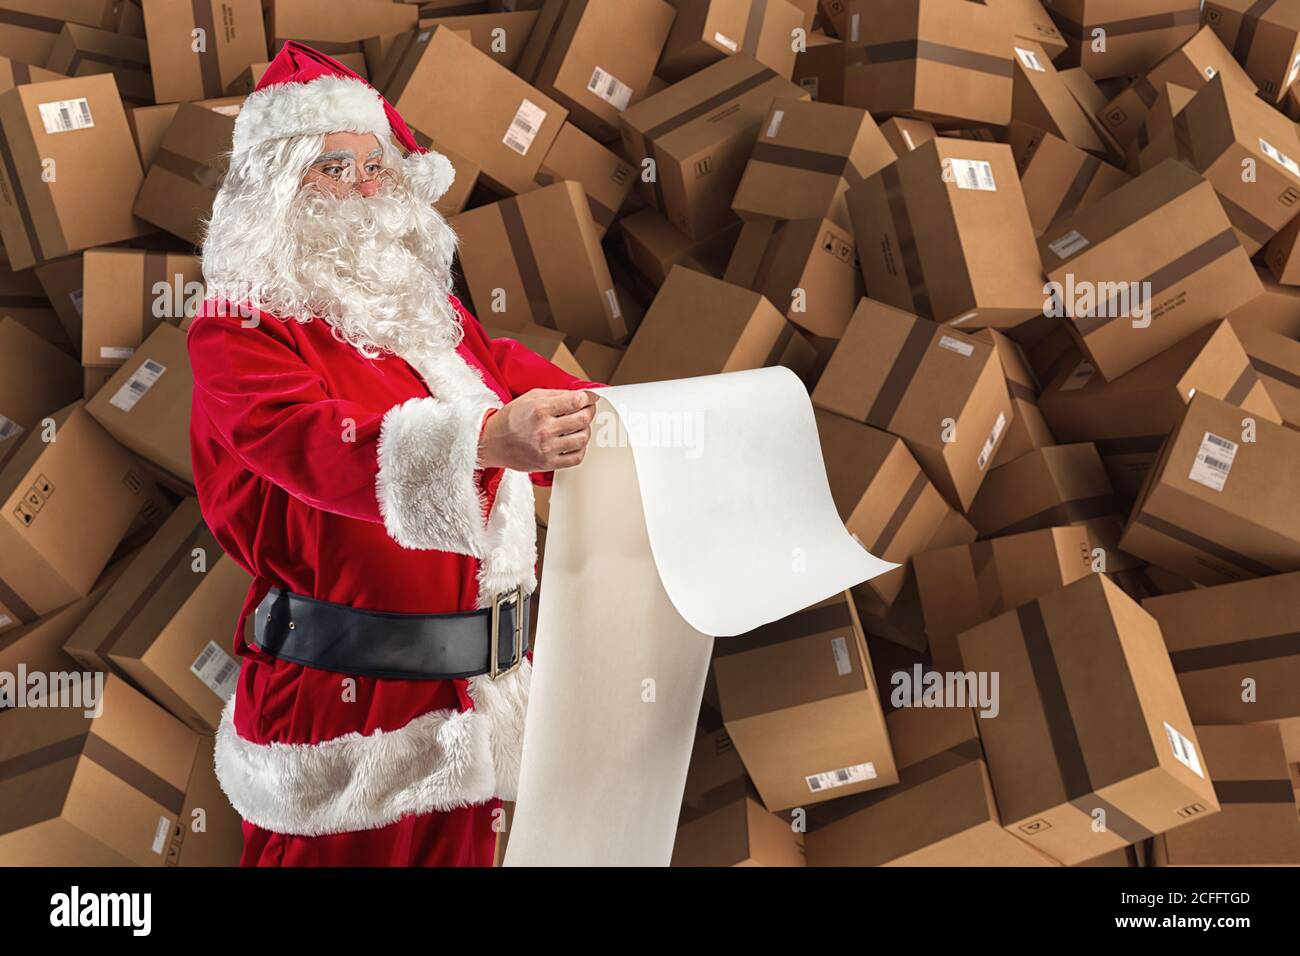 Le Père Noël est plein de demandes de cadeaux et de boîtes à livraison Banque D'Images